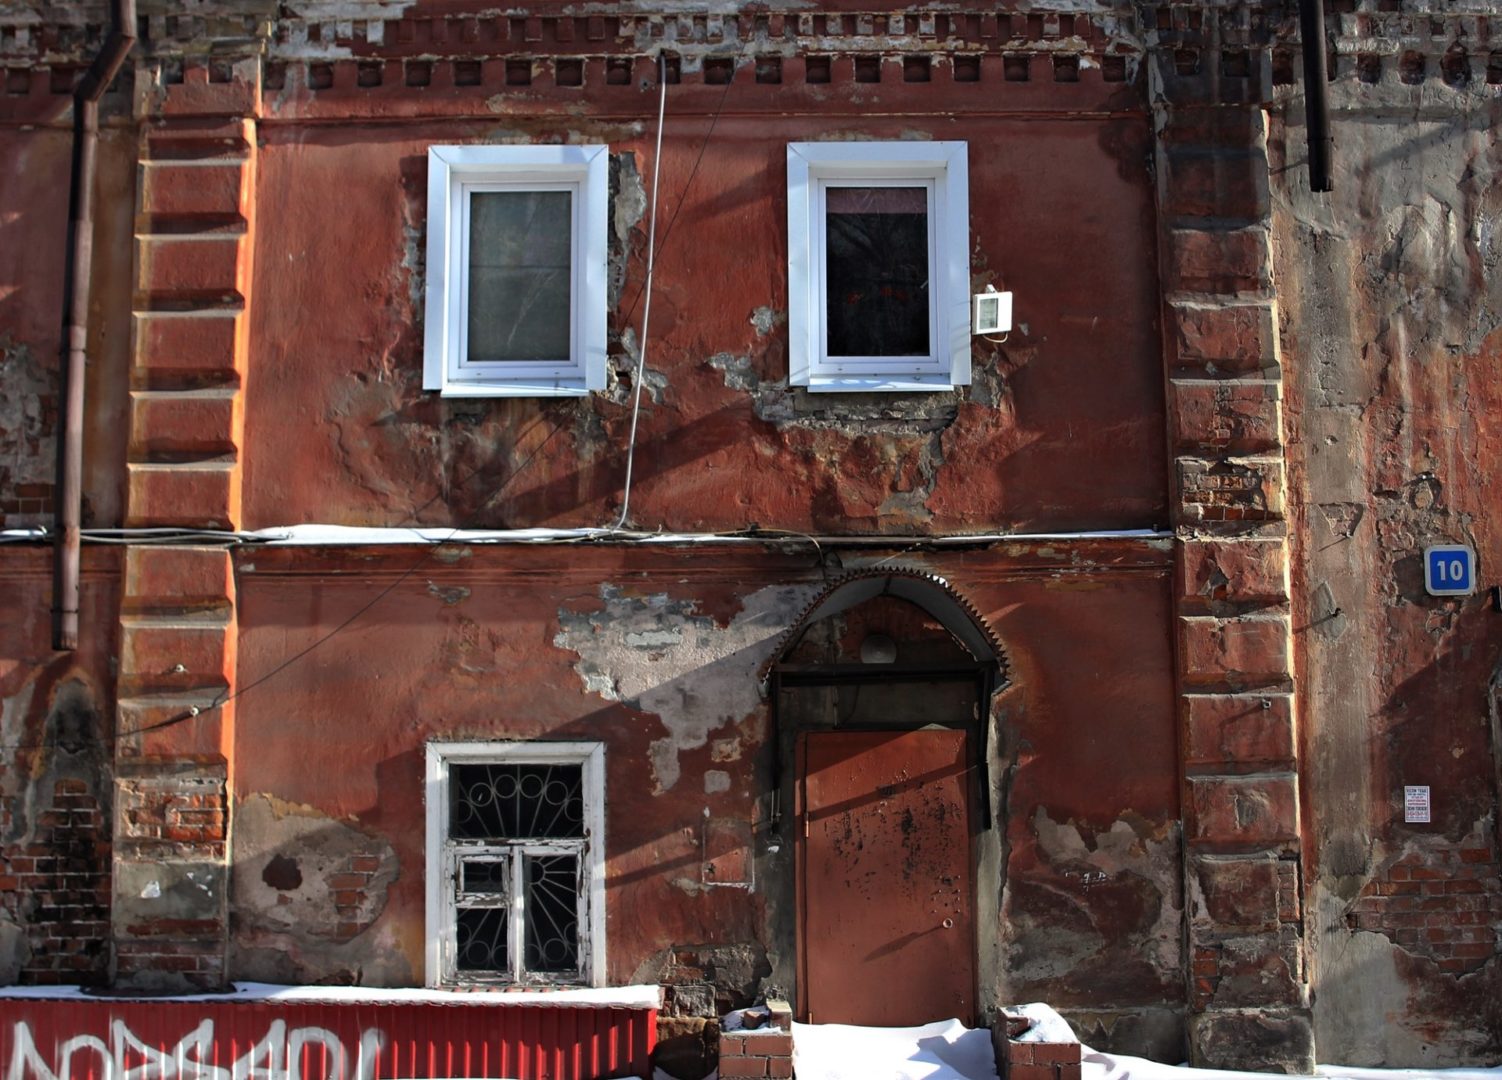 Улица Ударника в Иркутске: разрушающееся спокойствие